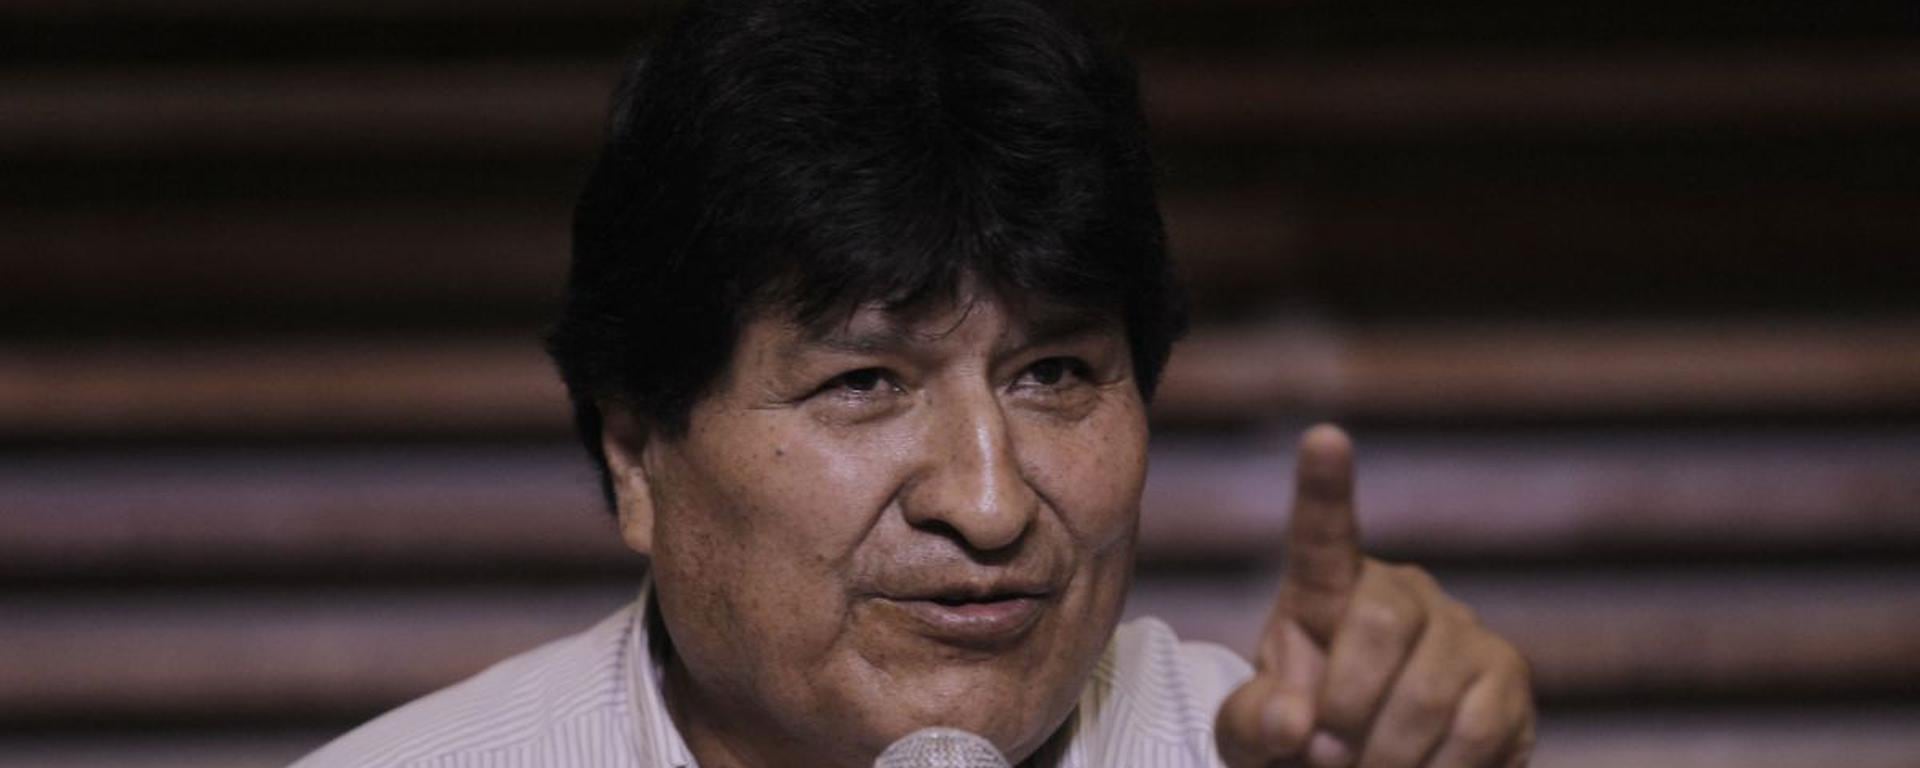 Evo Morales insiste en buscar apoyos en la región | INFORME